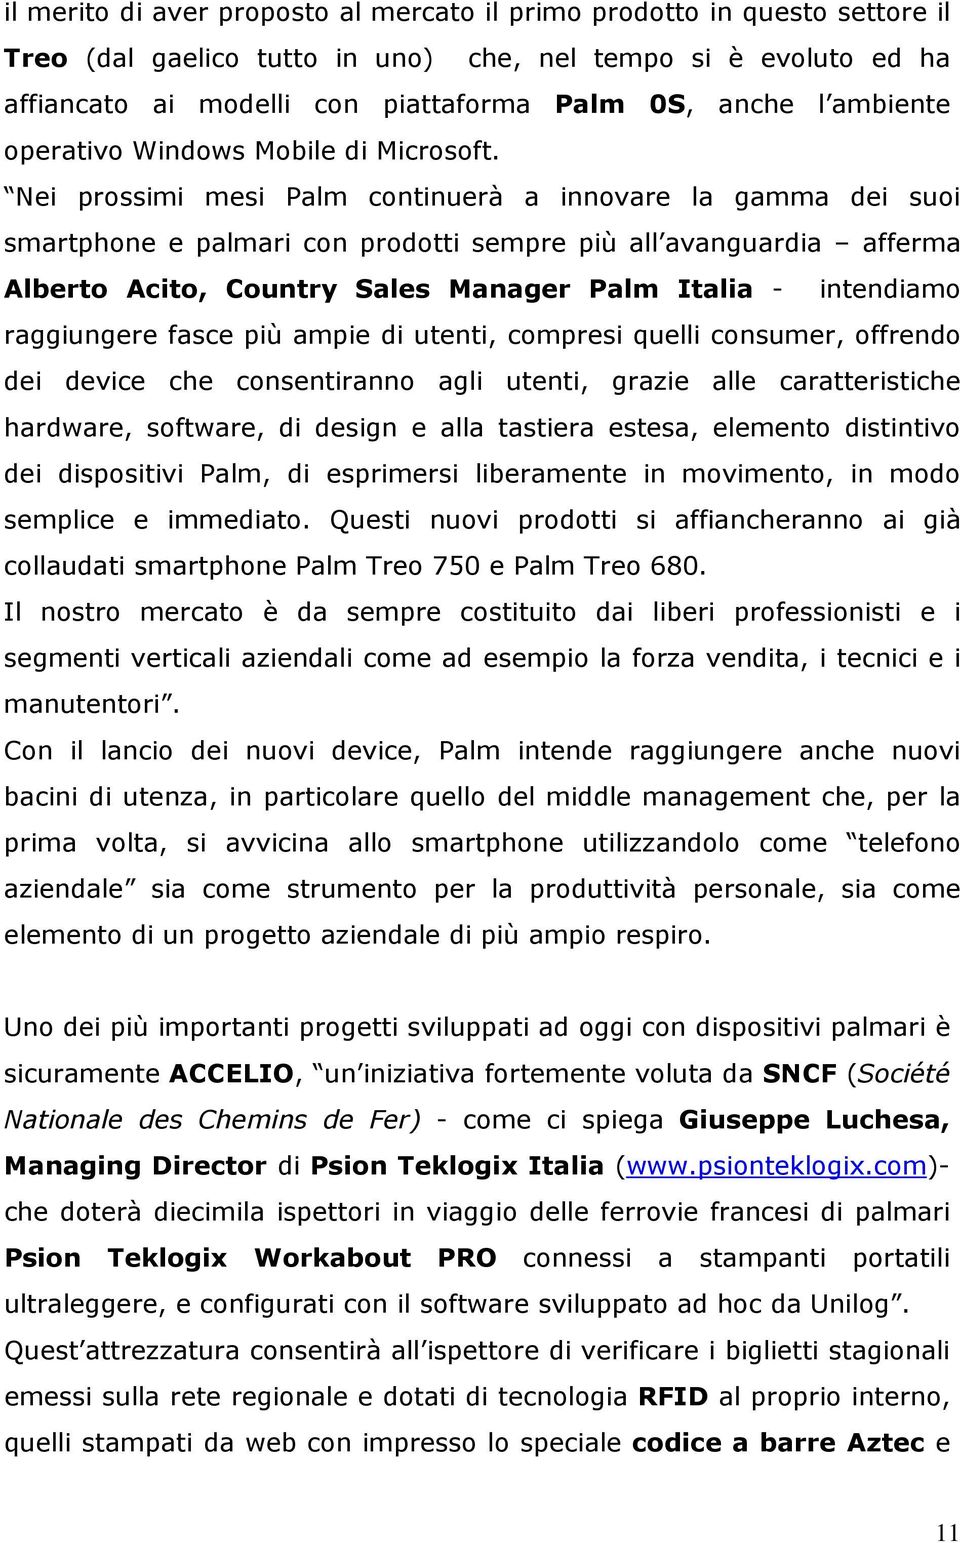 Nei prossimi mesi Palm continuerà a innovare la gamma dei suoi smartphone e palmari con prodotti sempre più all avanguardia afferma Alberto Acito, Country Sales Manager Palm Italia - intendiamo